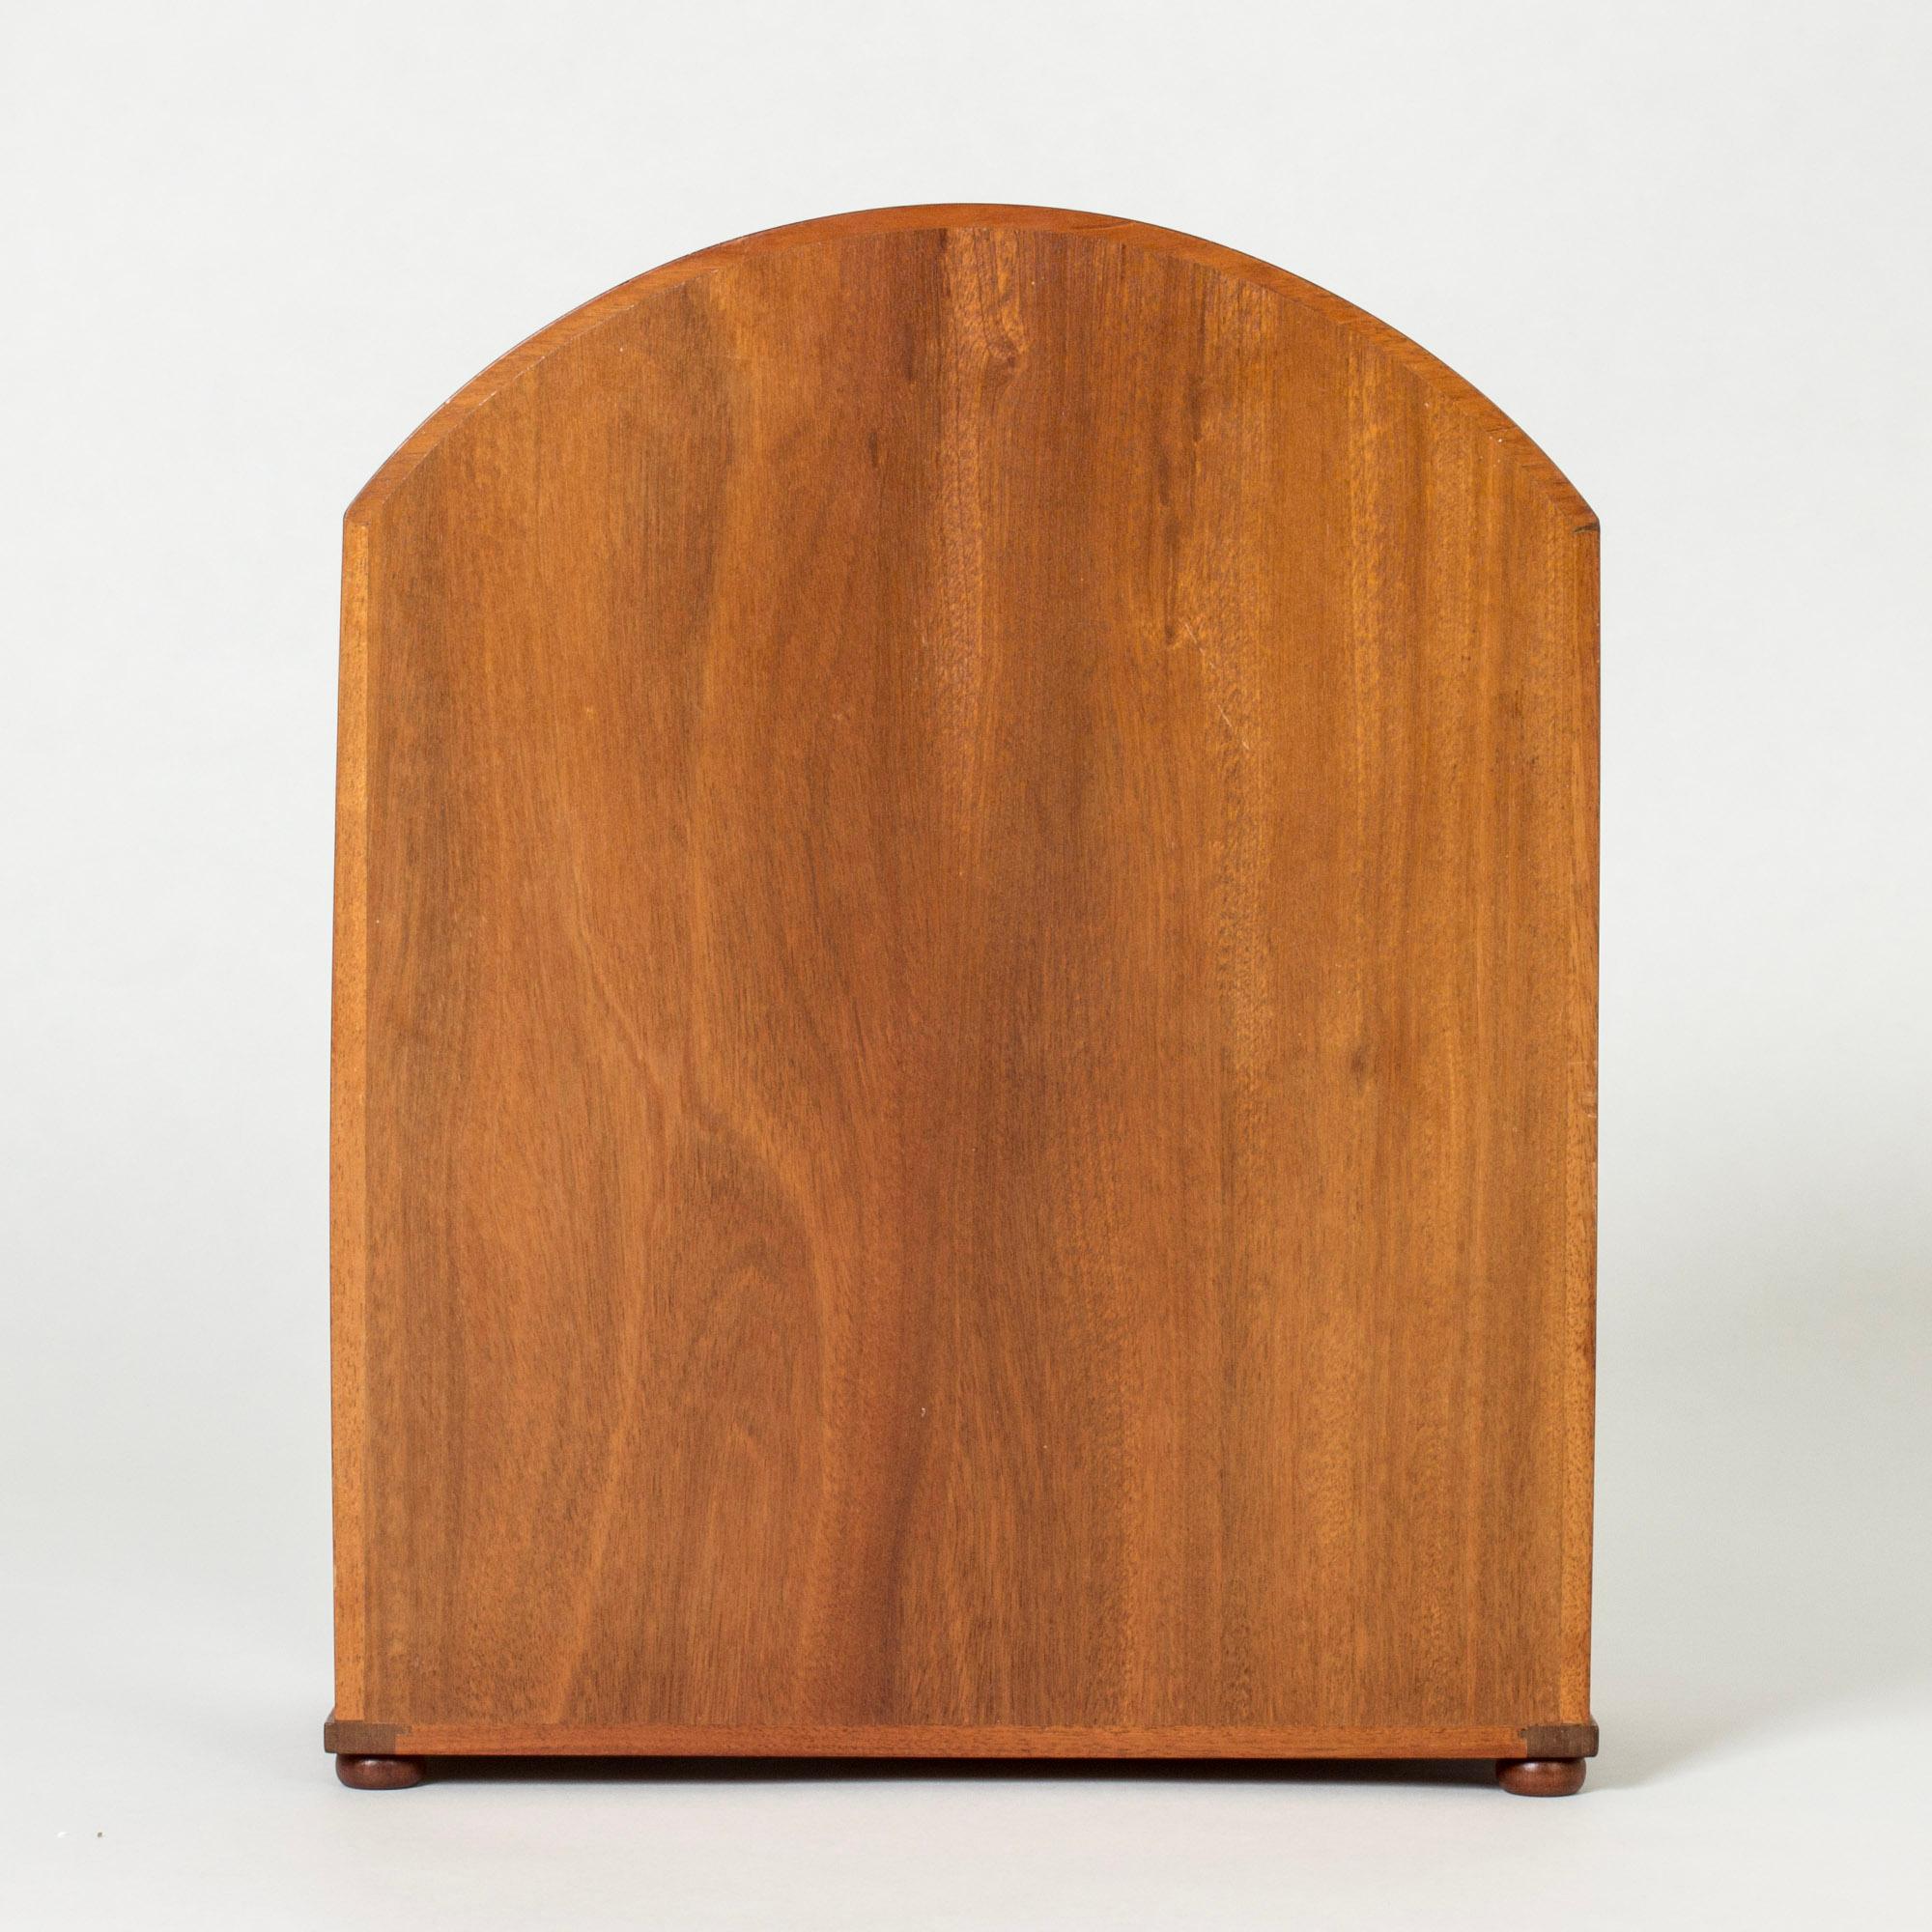 Vintage Modernist Table Vitrine Cabinet by Josef Frank, Svenskt Tenn, 1950s In Good Condition For Sale In Stockholm, SE